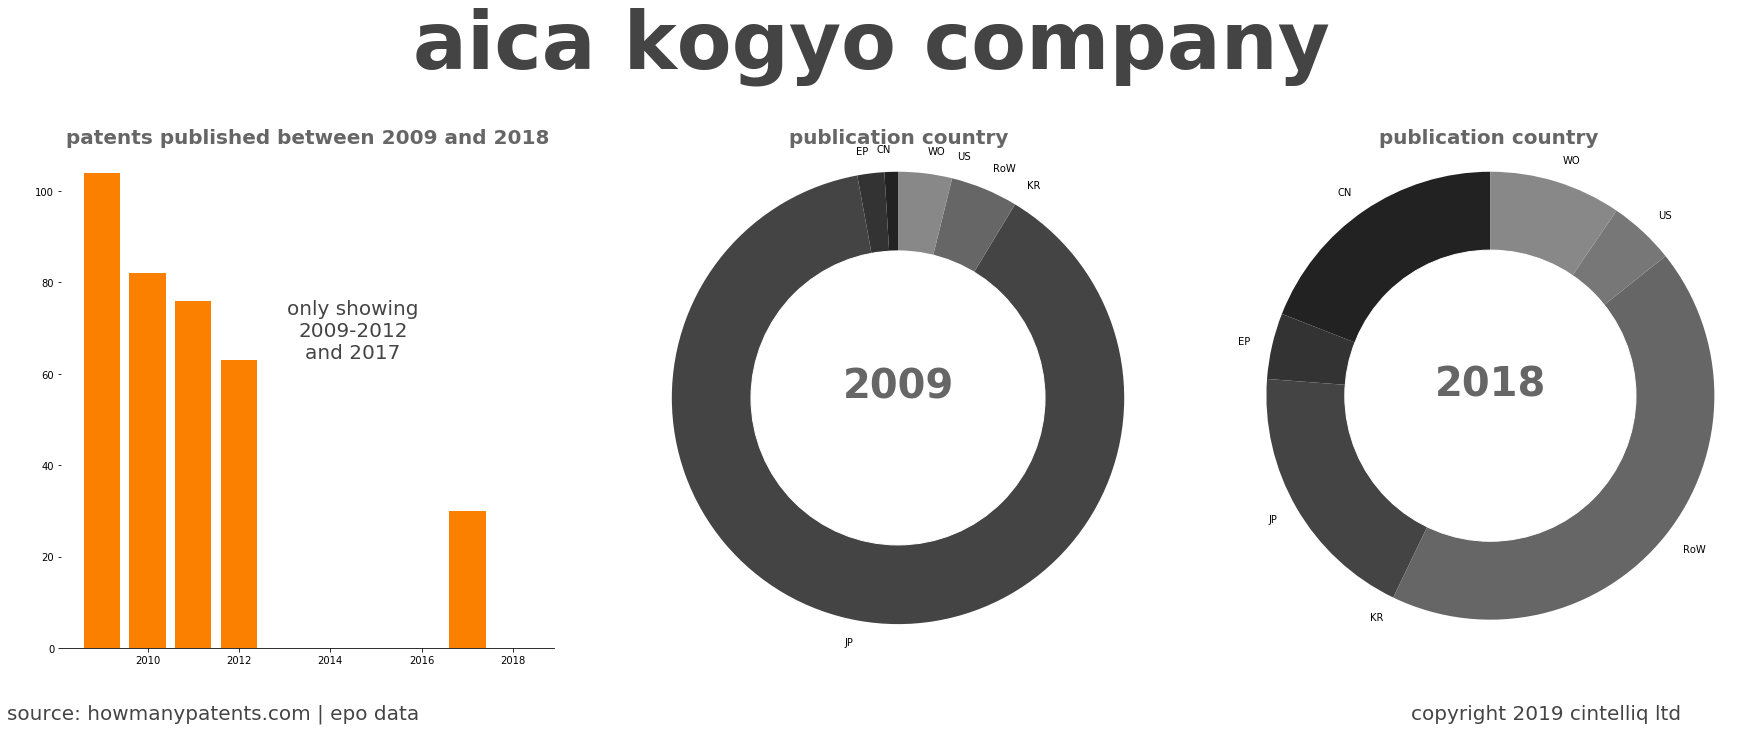 summary of patents for Aica Kogyo Company